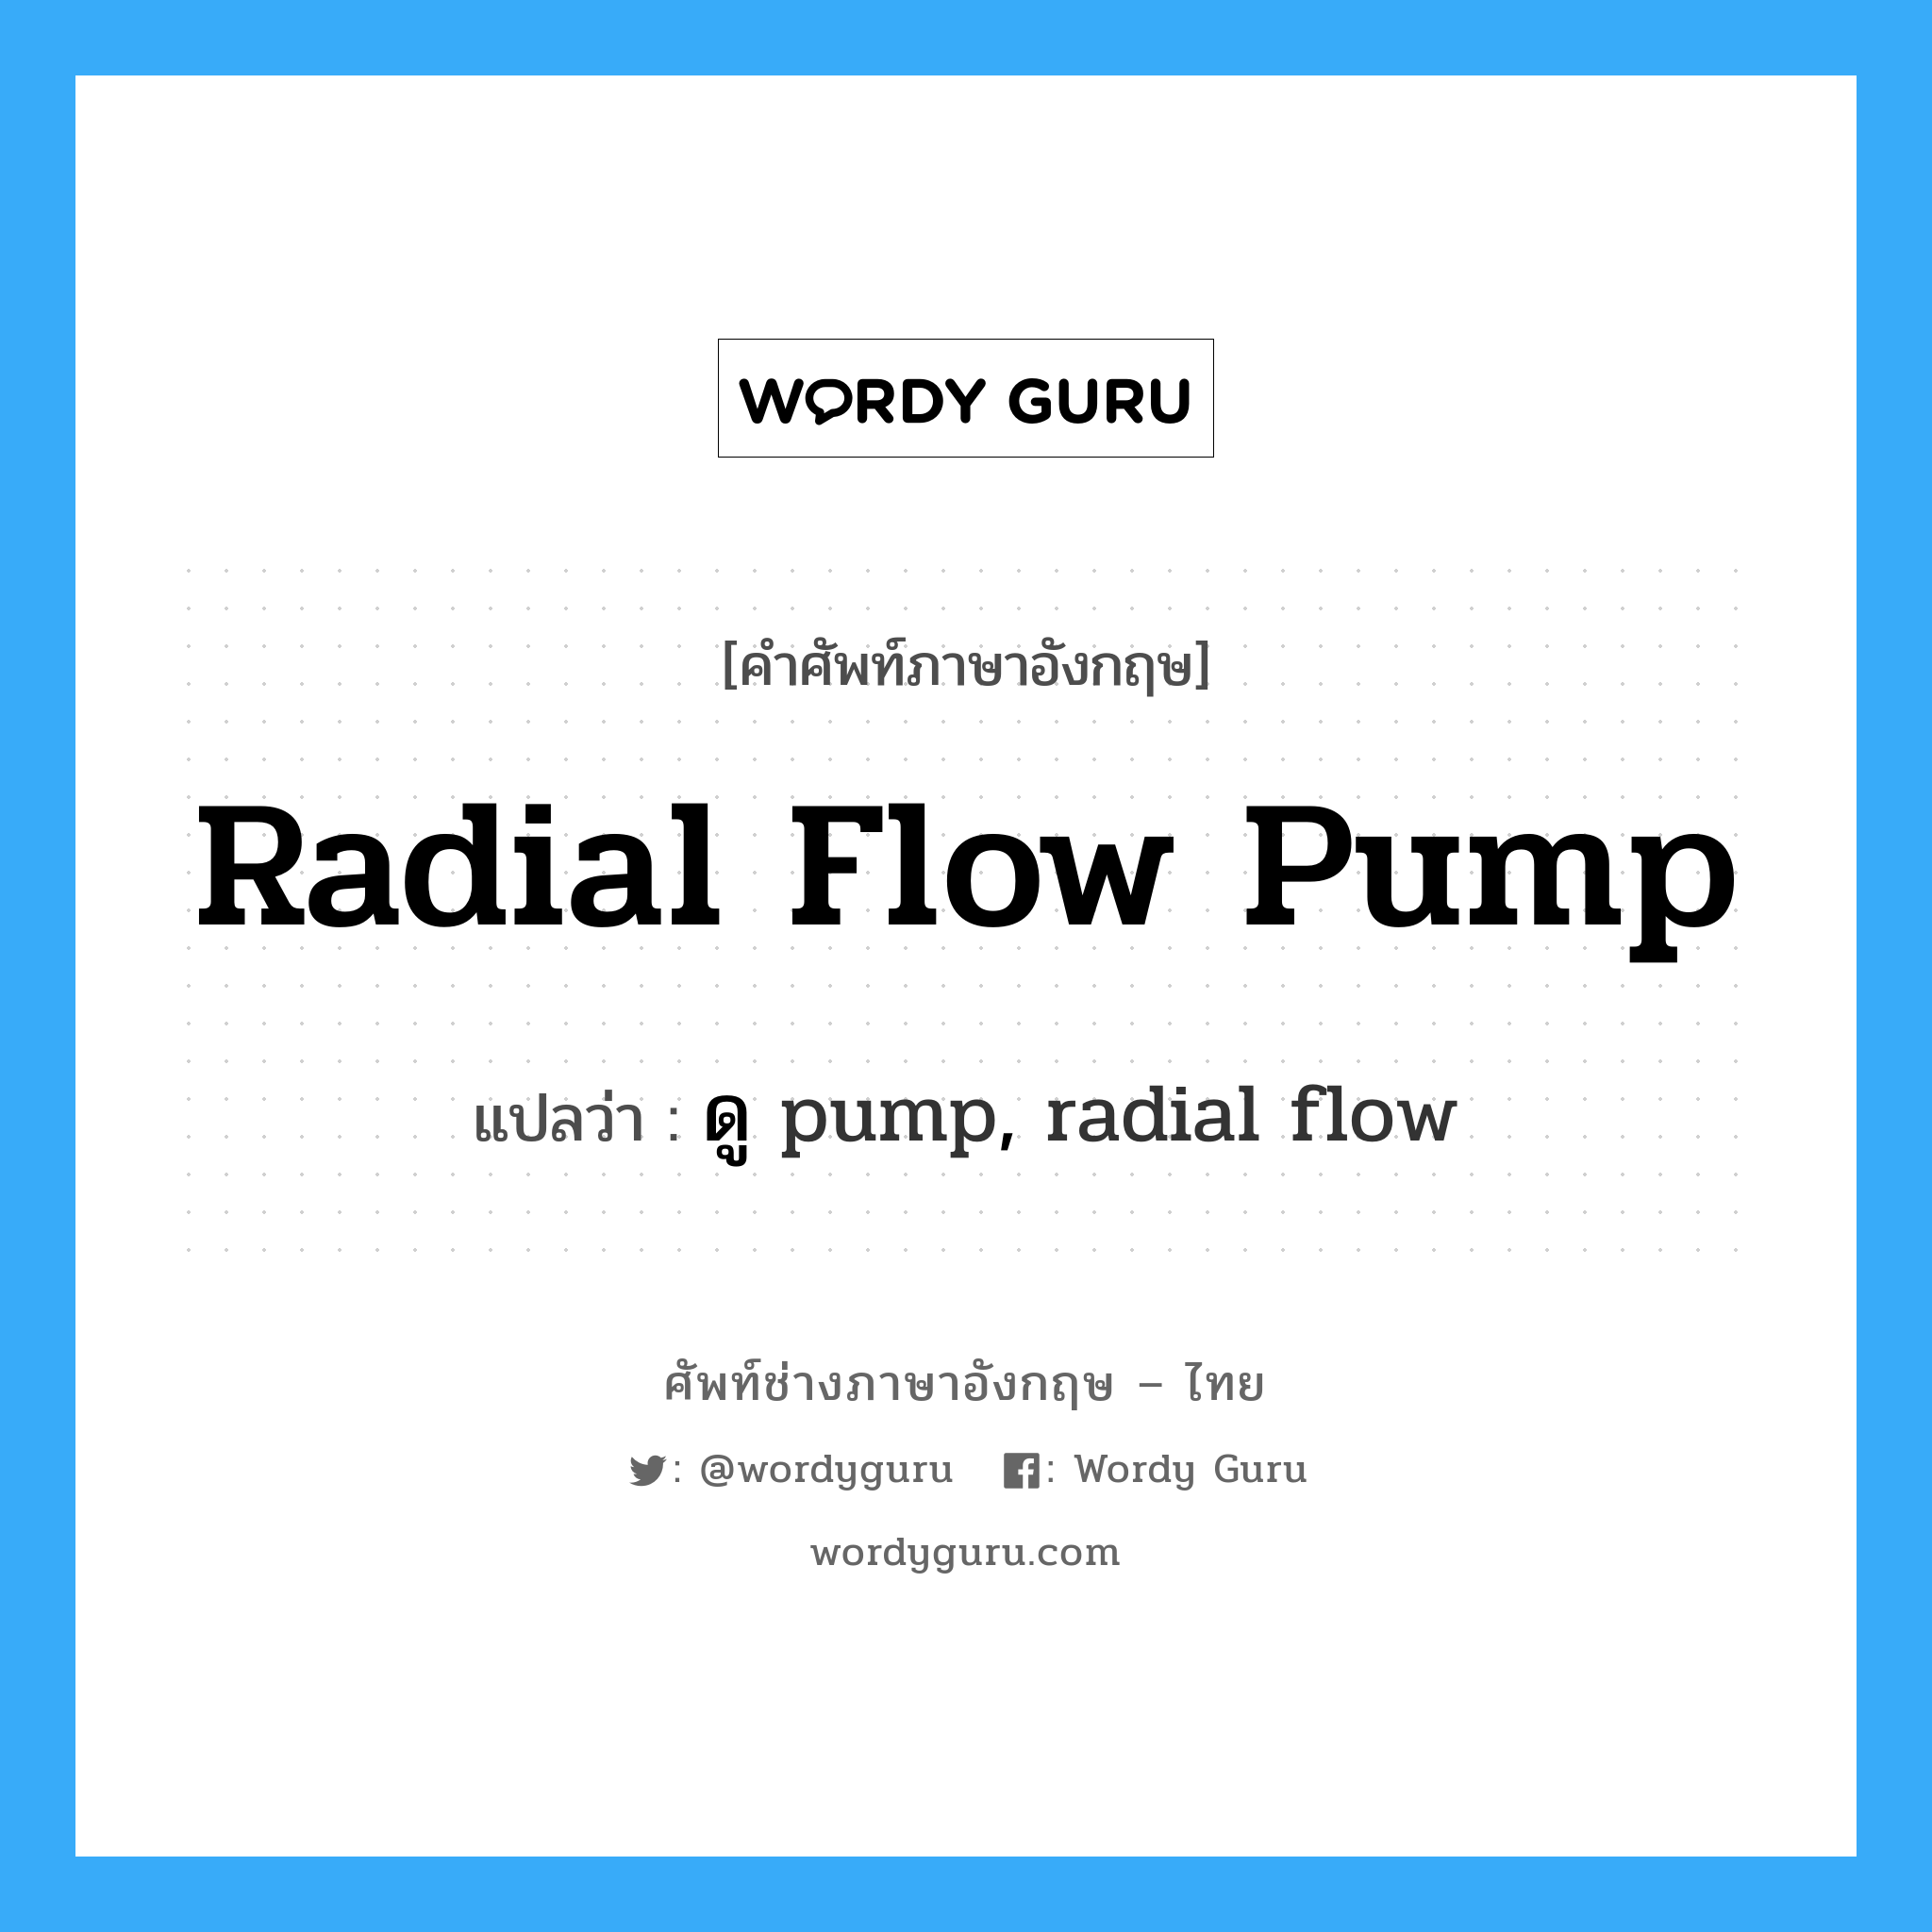 radial flow pump แปลว่า?, คำศัพท์ช่างภาษาอังกฤษ - ไทย radial flow pump คำศัพท์ภาษาอังกฤษ radial flow pump แปลว่า ดู pump, radial flow